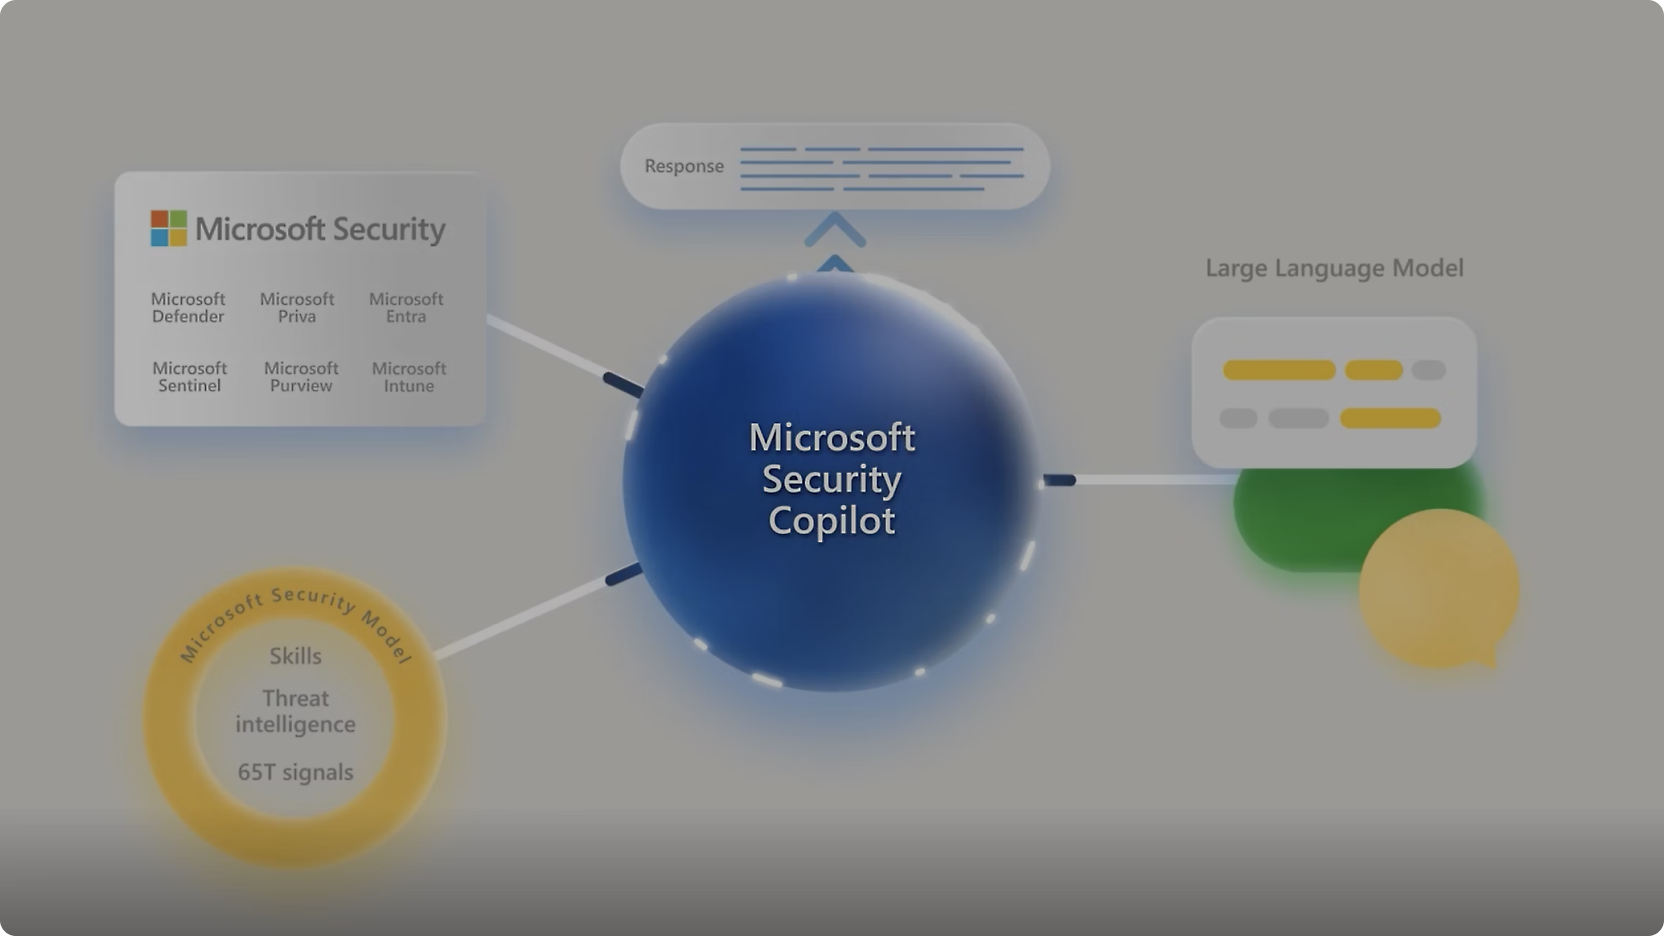 Diagrama que mostra o "Microsoft Security Copilot" no centro com ligações a várias ferramentas de segurança da Microsoft